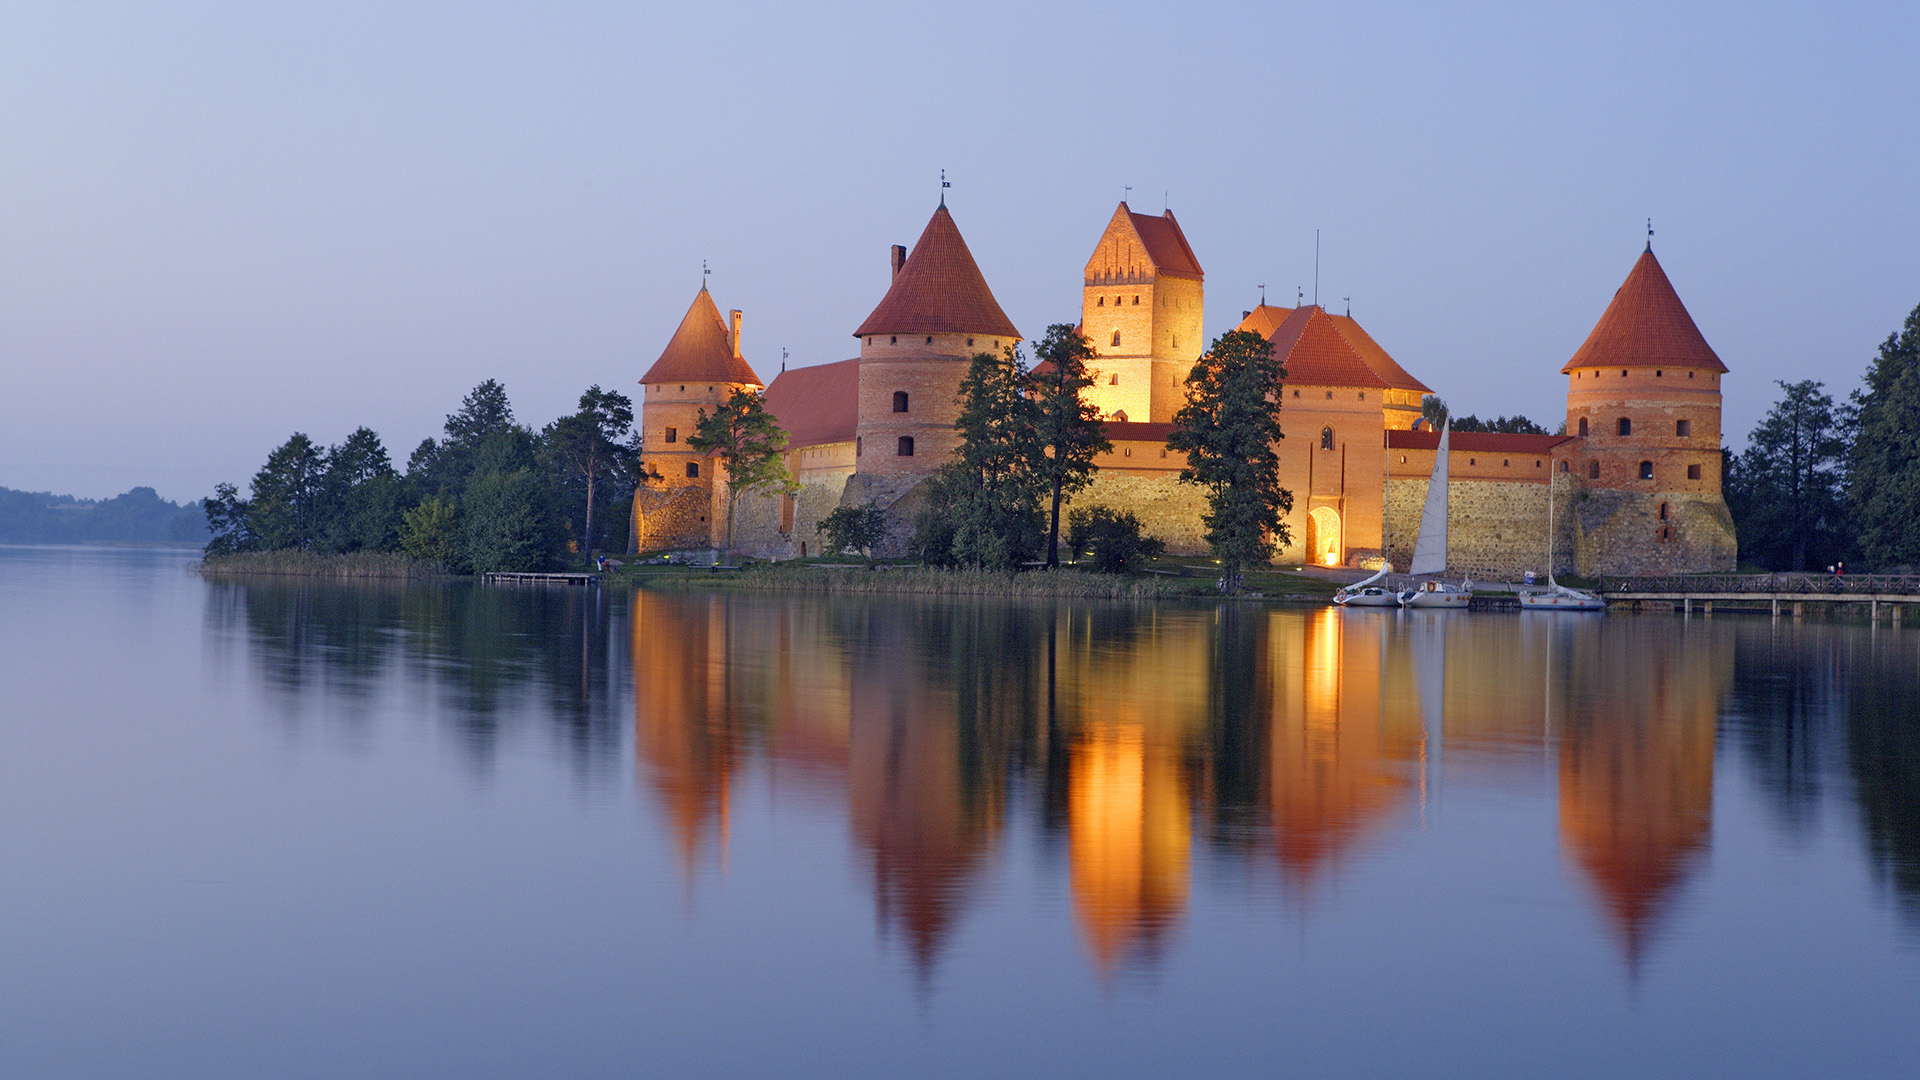 Télécharger des fonds d'écran Château De L'île De Trakai HD